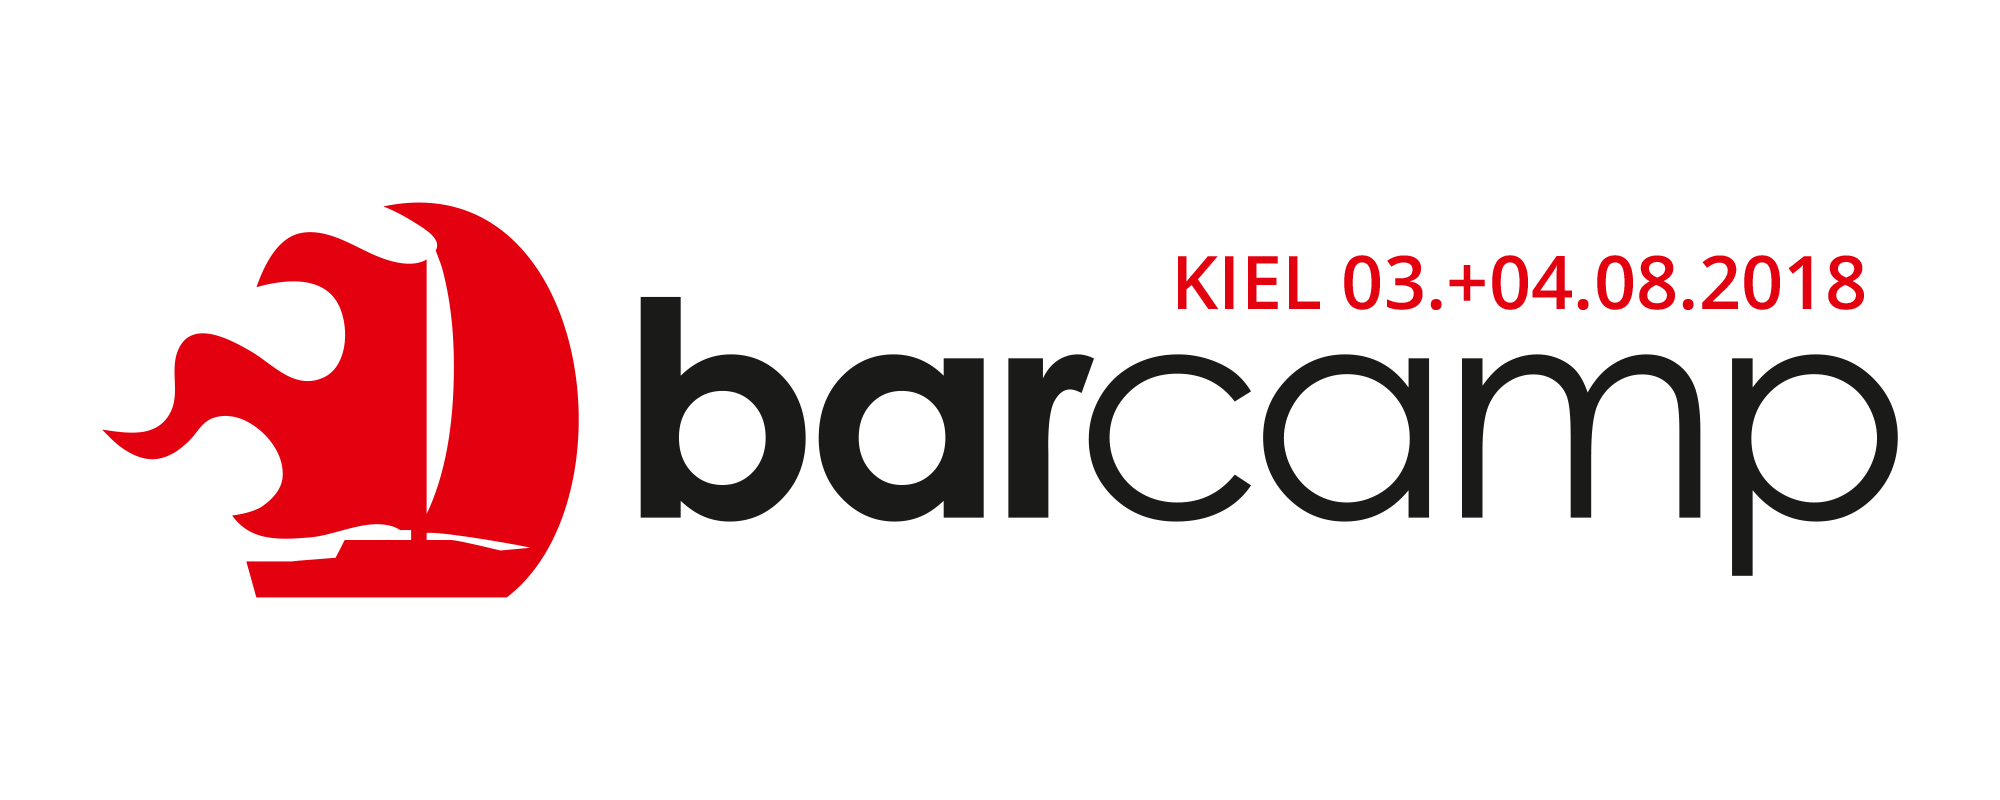 Kiel Logo - BarCamp Kiel 2019 - BarCamp Kiel 2019 | Sei dabei! BarCamp Kiel 2019 ...